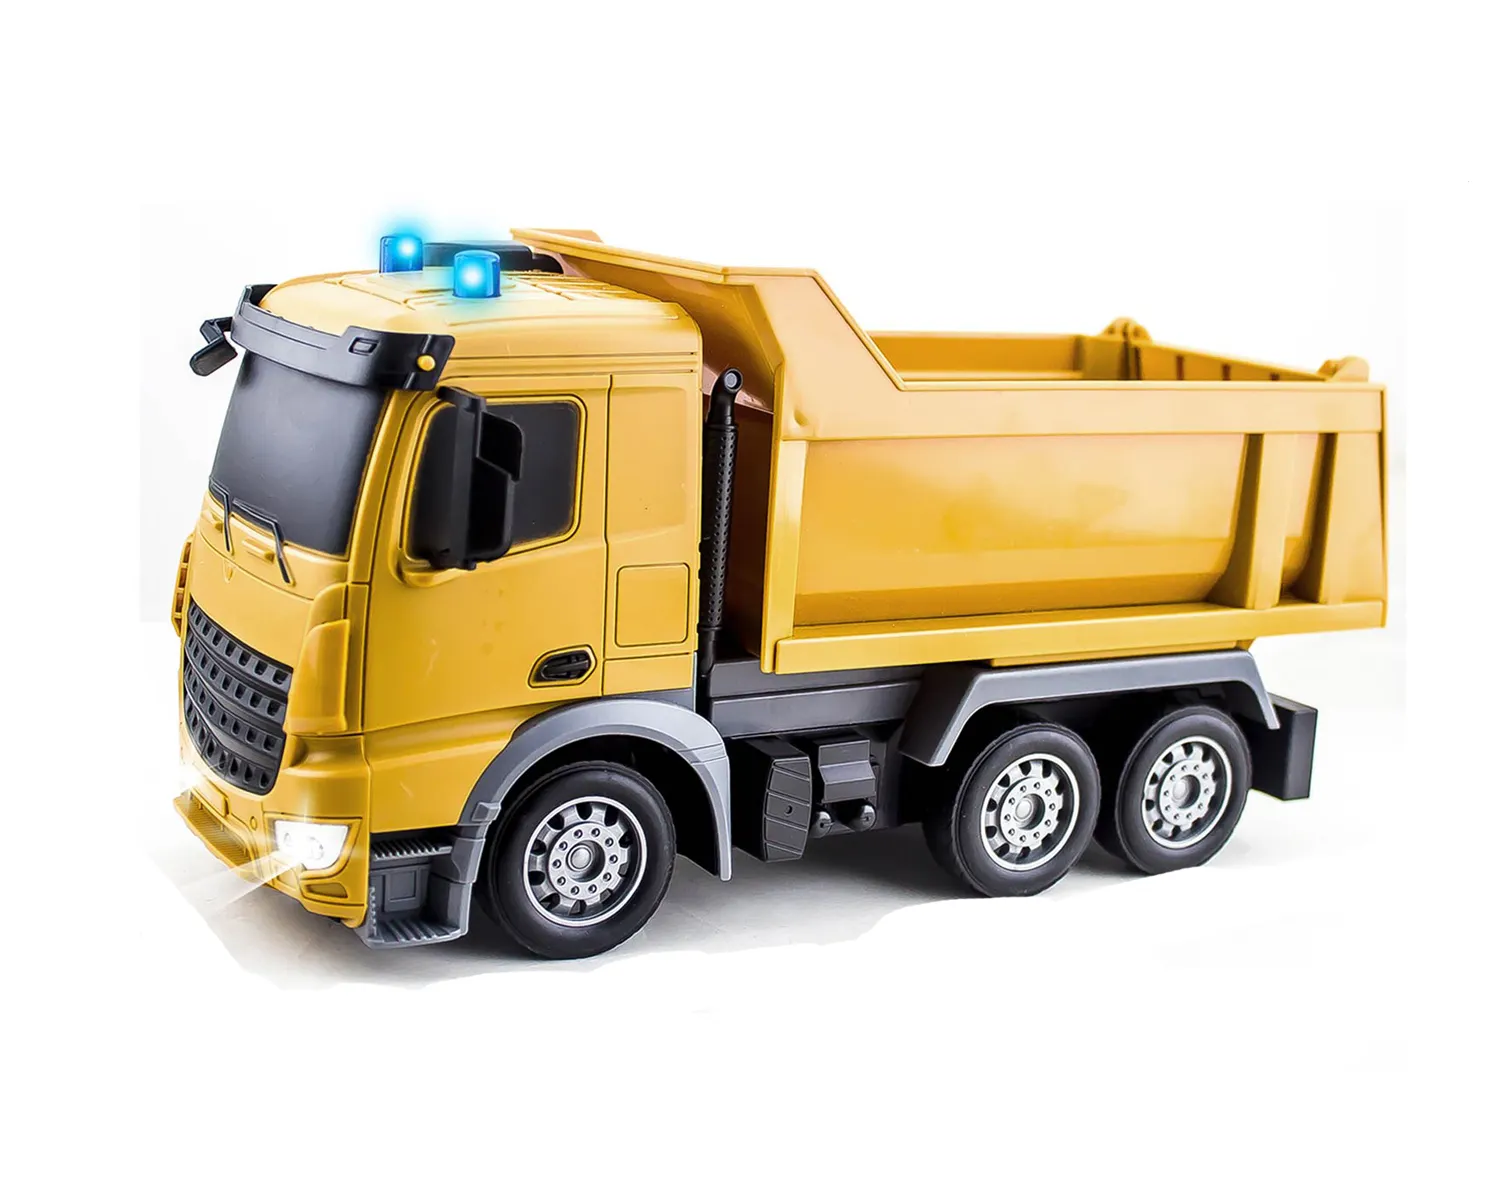 LONGXI 2.4G camion télécommandé jouets 6-ch rc auto-show modèle de camion à benne basculante jouets avec phare camion électrique trémie haut et bas